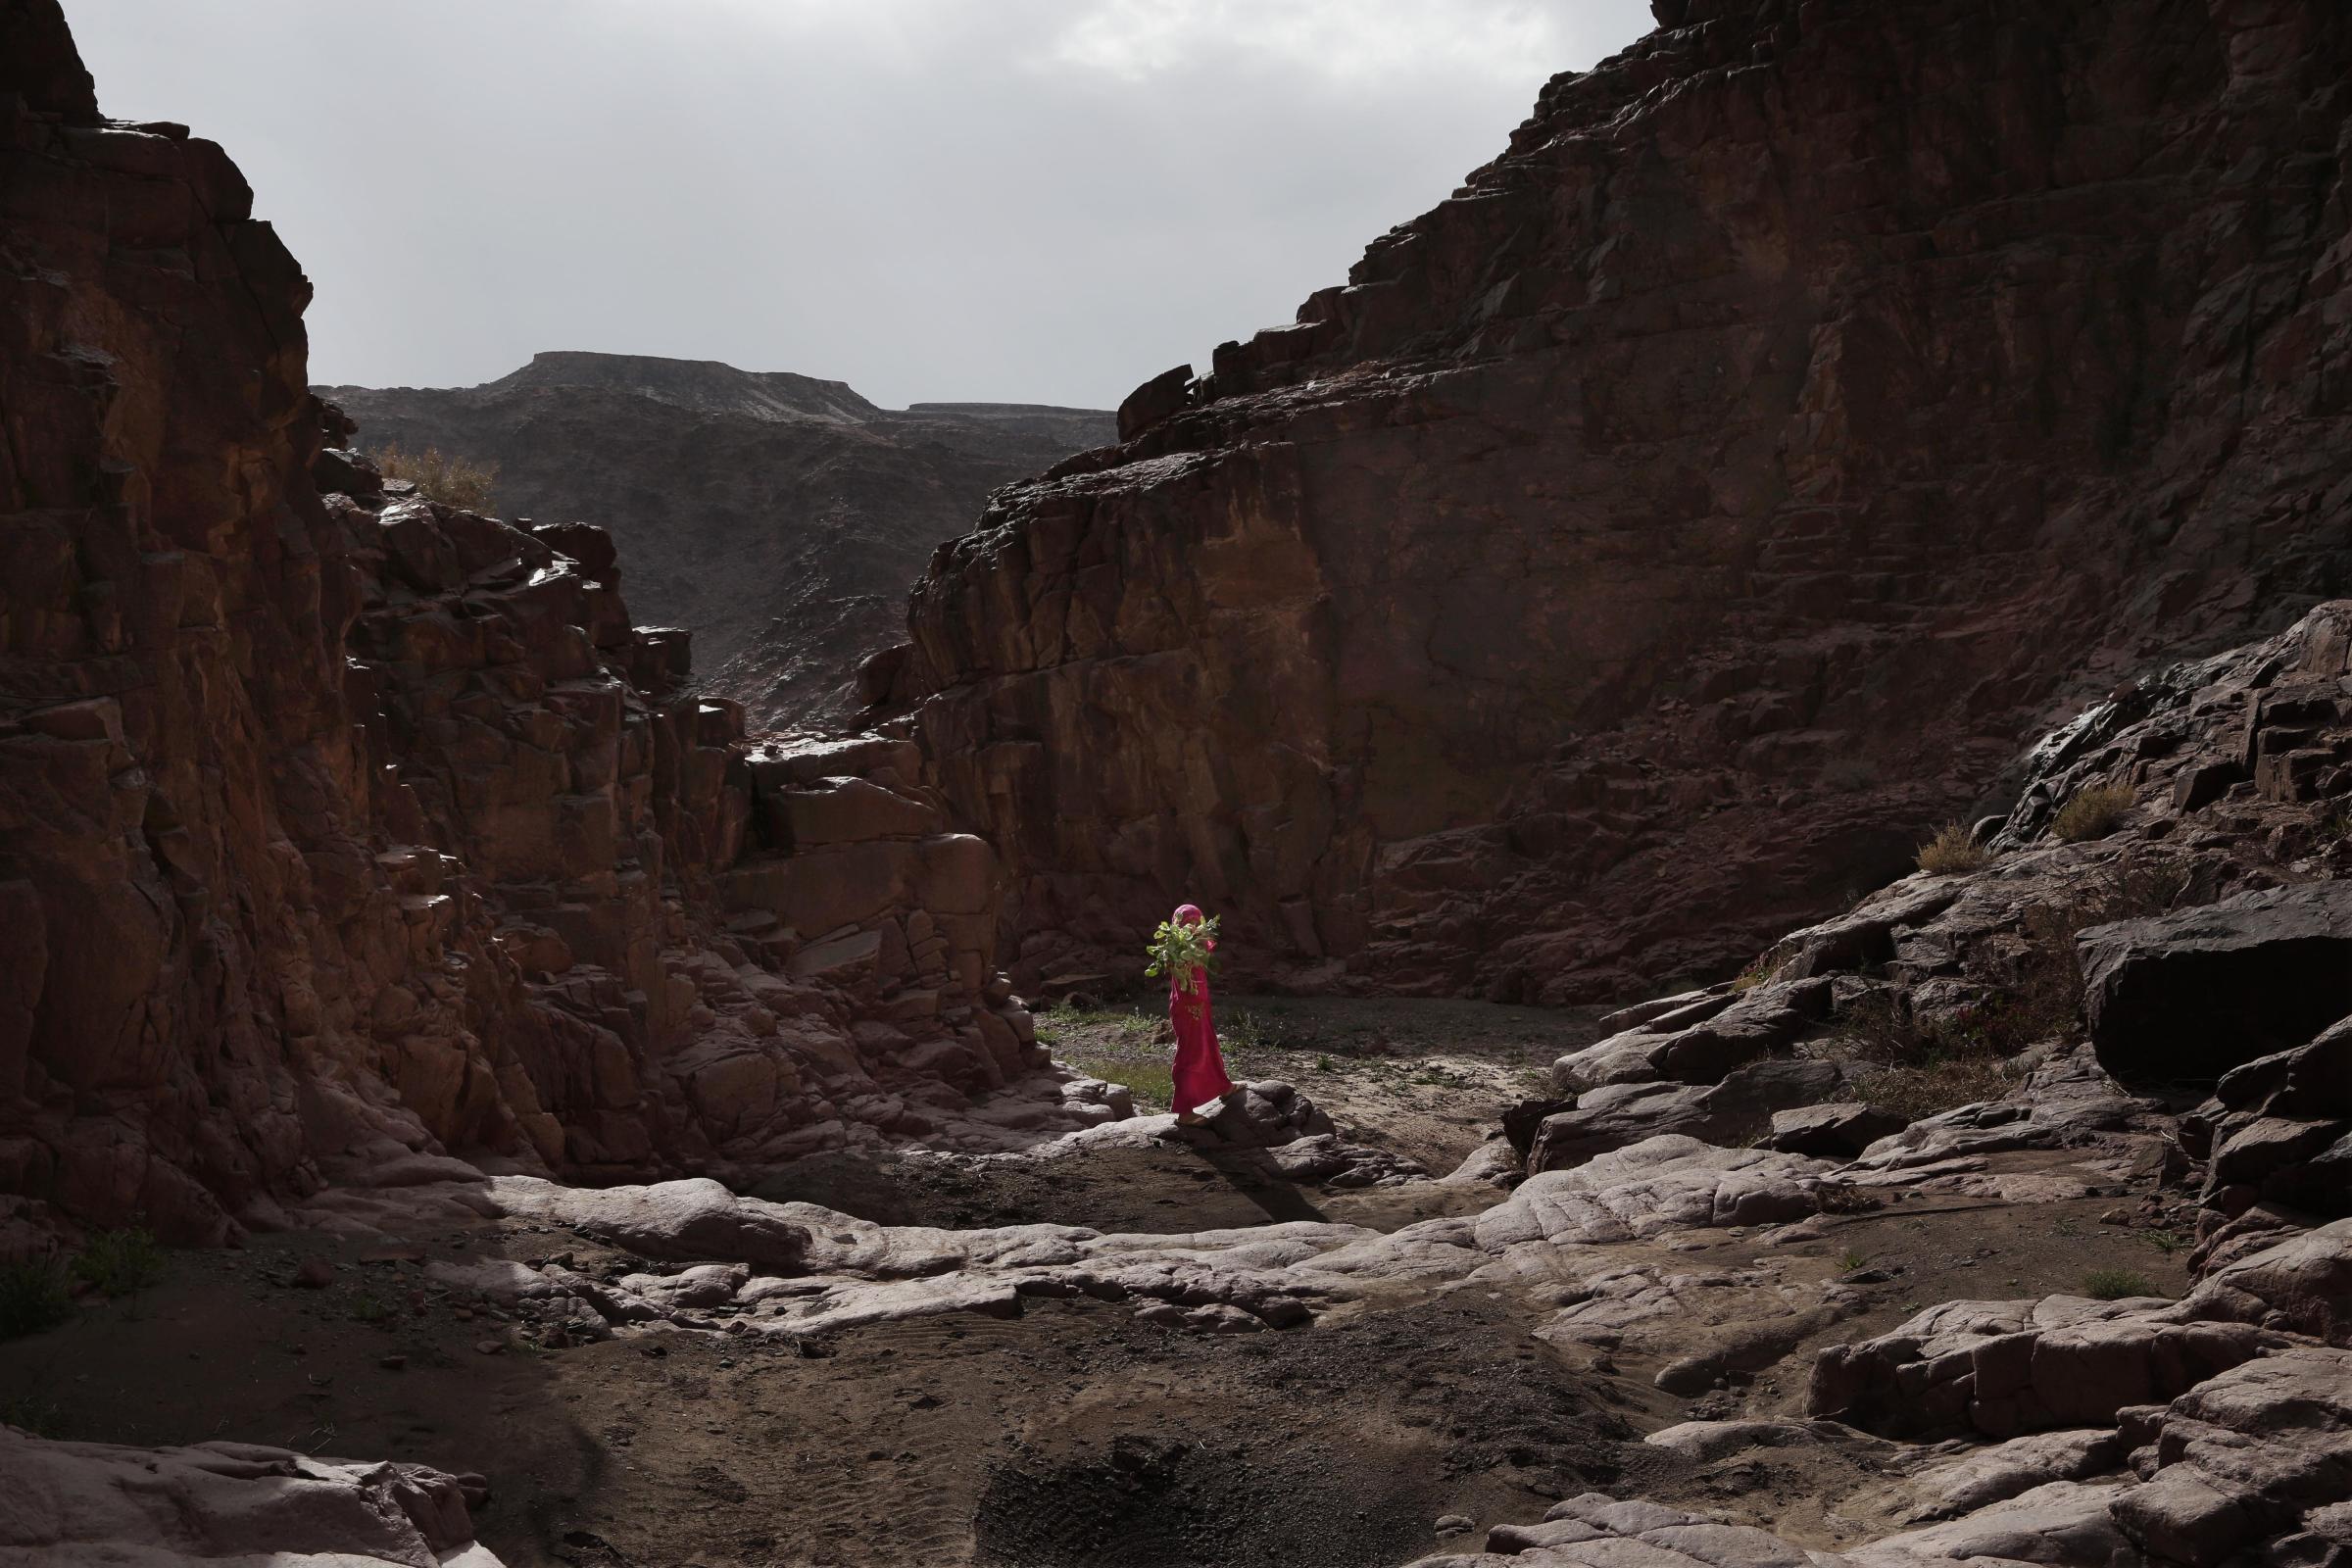 Bedouin women lead first tour in Egypt’s Sinai - Abu Zenima, South Sinai.